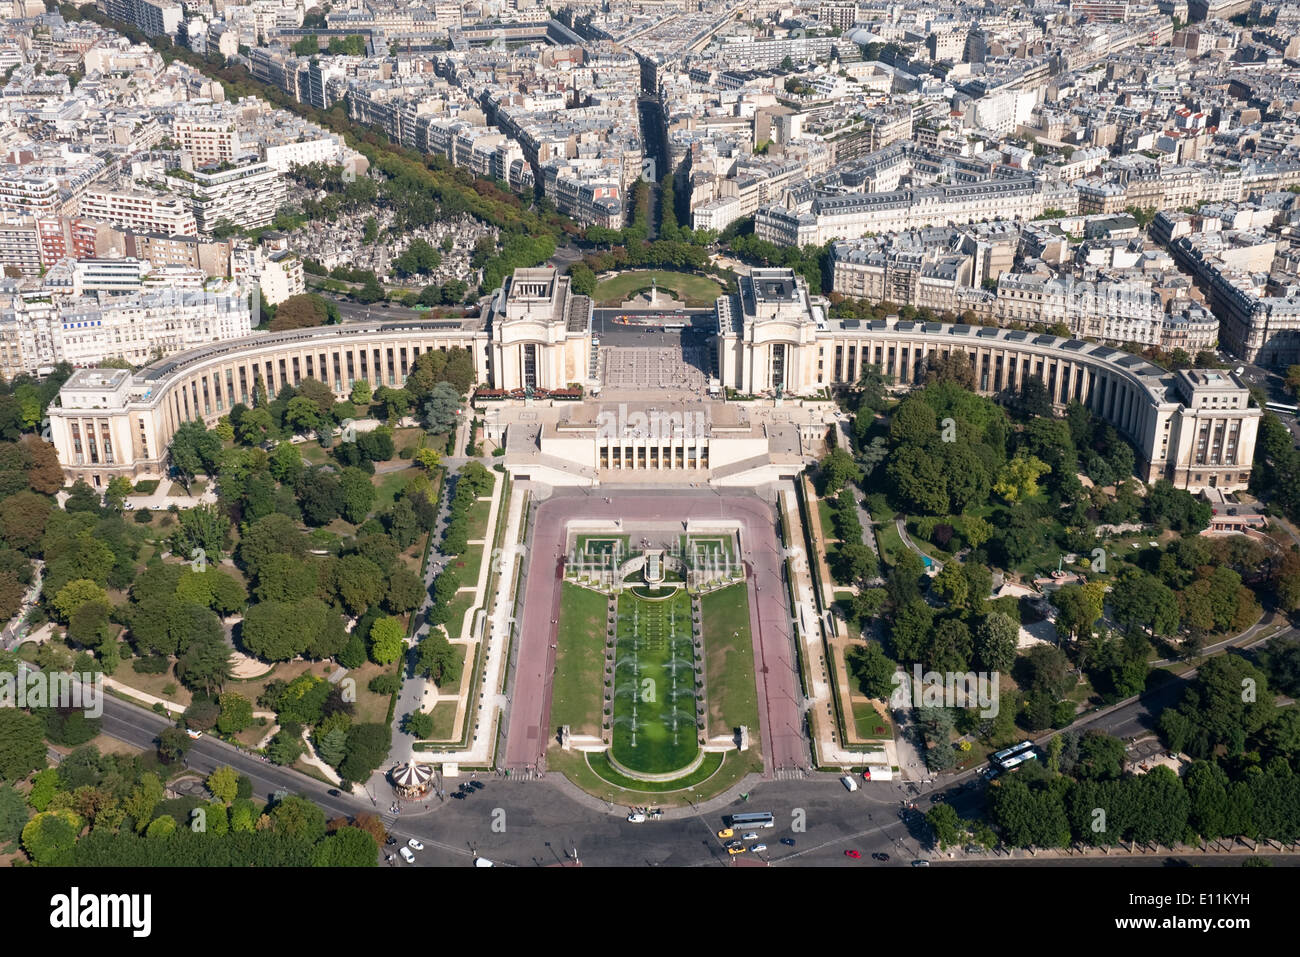 Palais de Chaillot, Paris, Frankreich - Palais de Chaillot, Paris, France Stock Photo